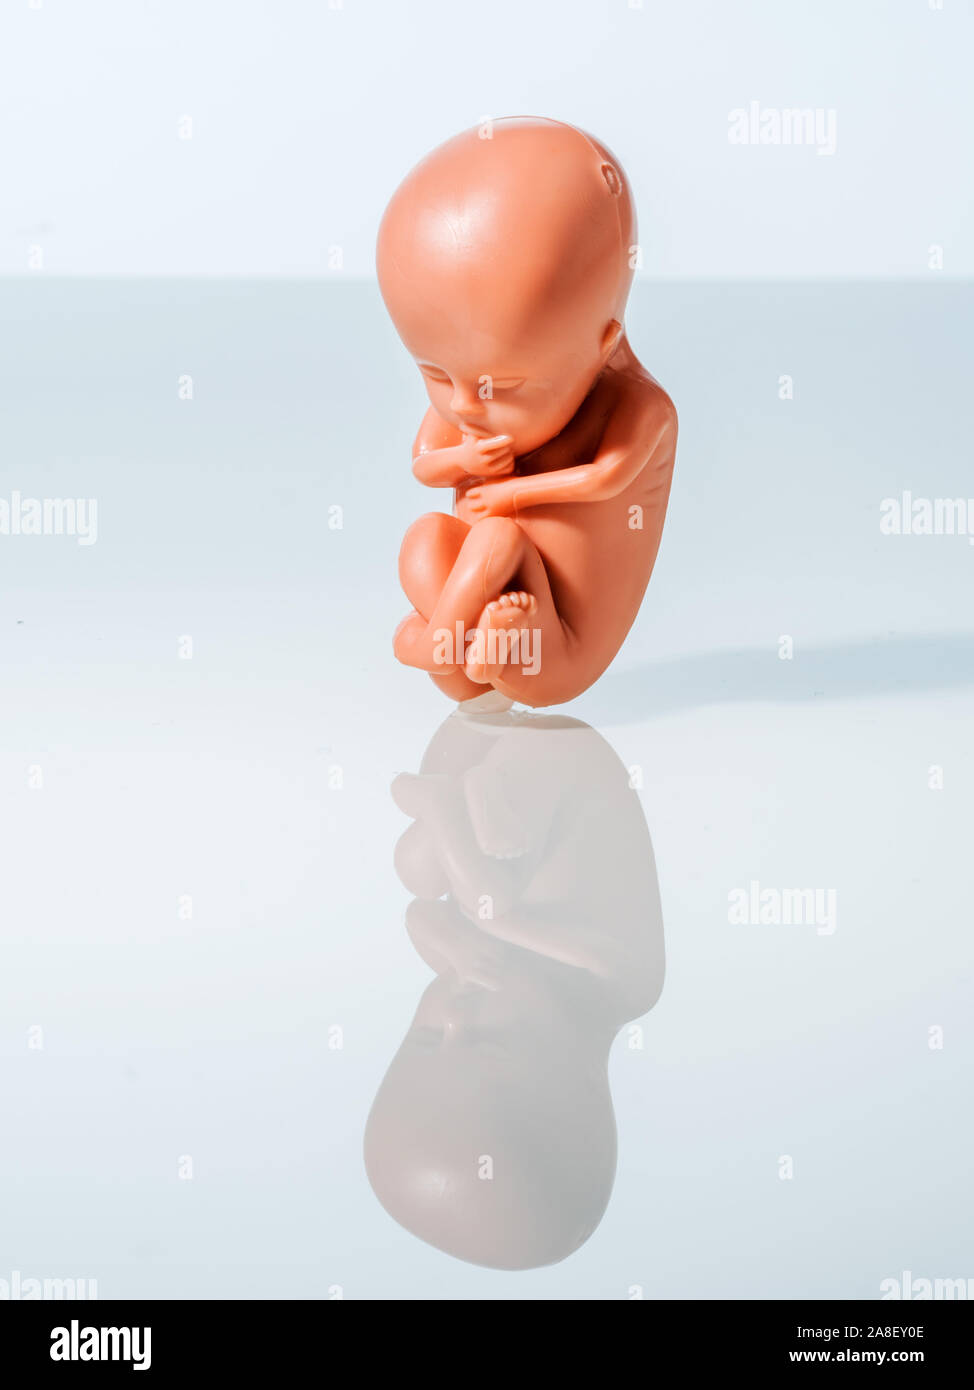 Ein 12-Wochen alter Emybro aus Plastik. Modell für Schwangerschaft, Abtreibung und Verhütung. Schutz von ungeborenem Leben. Foto Stock